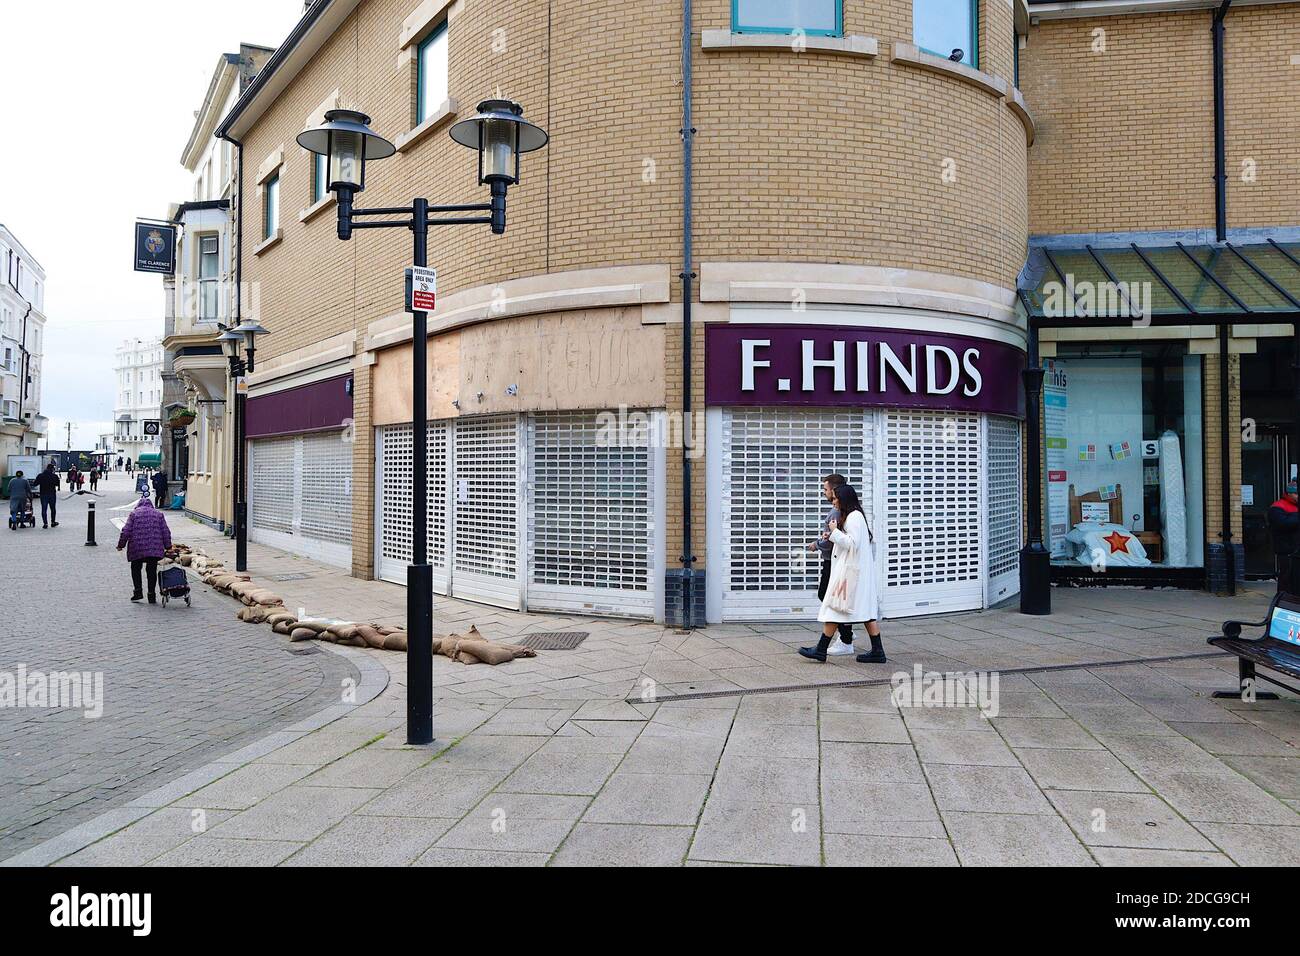 Hastings, East Sussex, Großbritannien. November 2020, 21. Coronavirus-Update: Lokale Unternehmen und große Einzelhändler schließen aufgrund der Coronavirus-Pandemie. Geschlossen F. Hinds wegen Überschwemmung. Foto: PAL Media/Alamy Live News Stockfoto